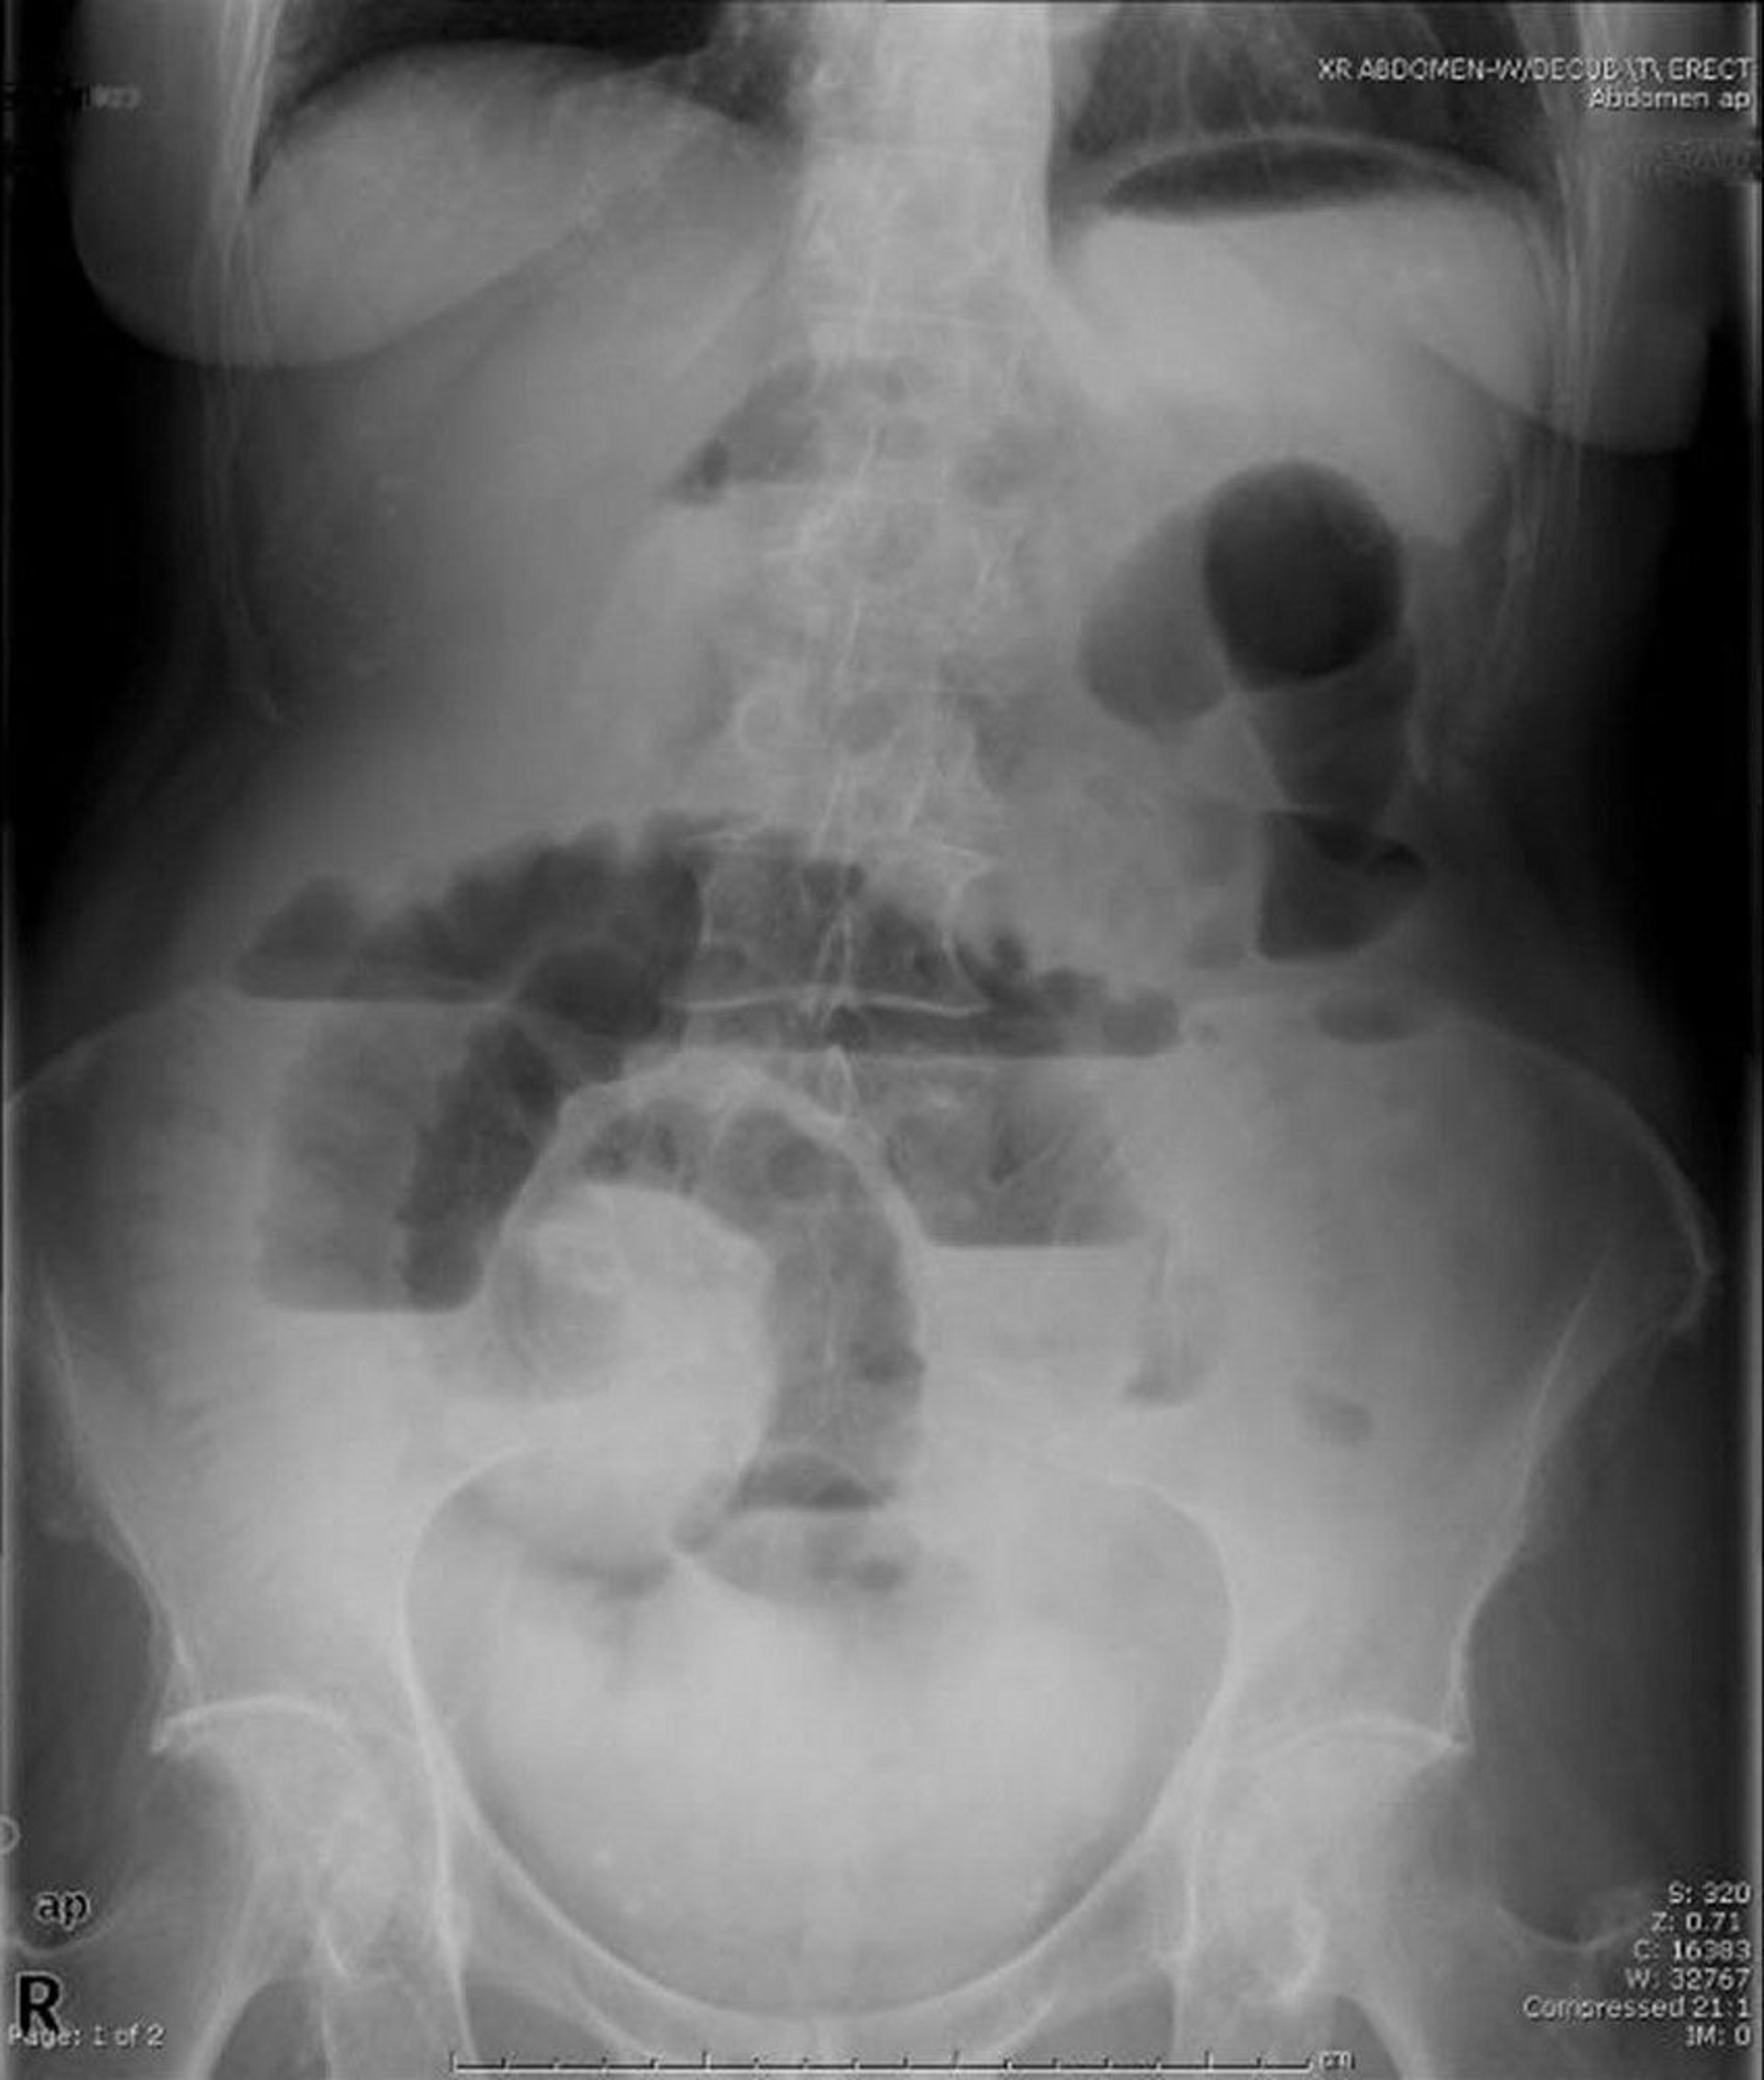 Obstruktion des Dünndarms (Röntgenaufnahme in aufrechter Position)